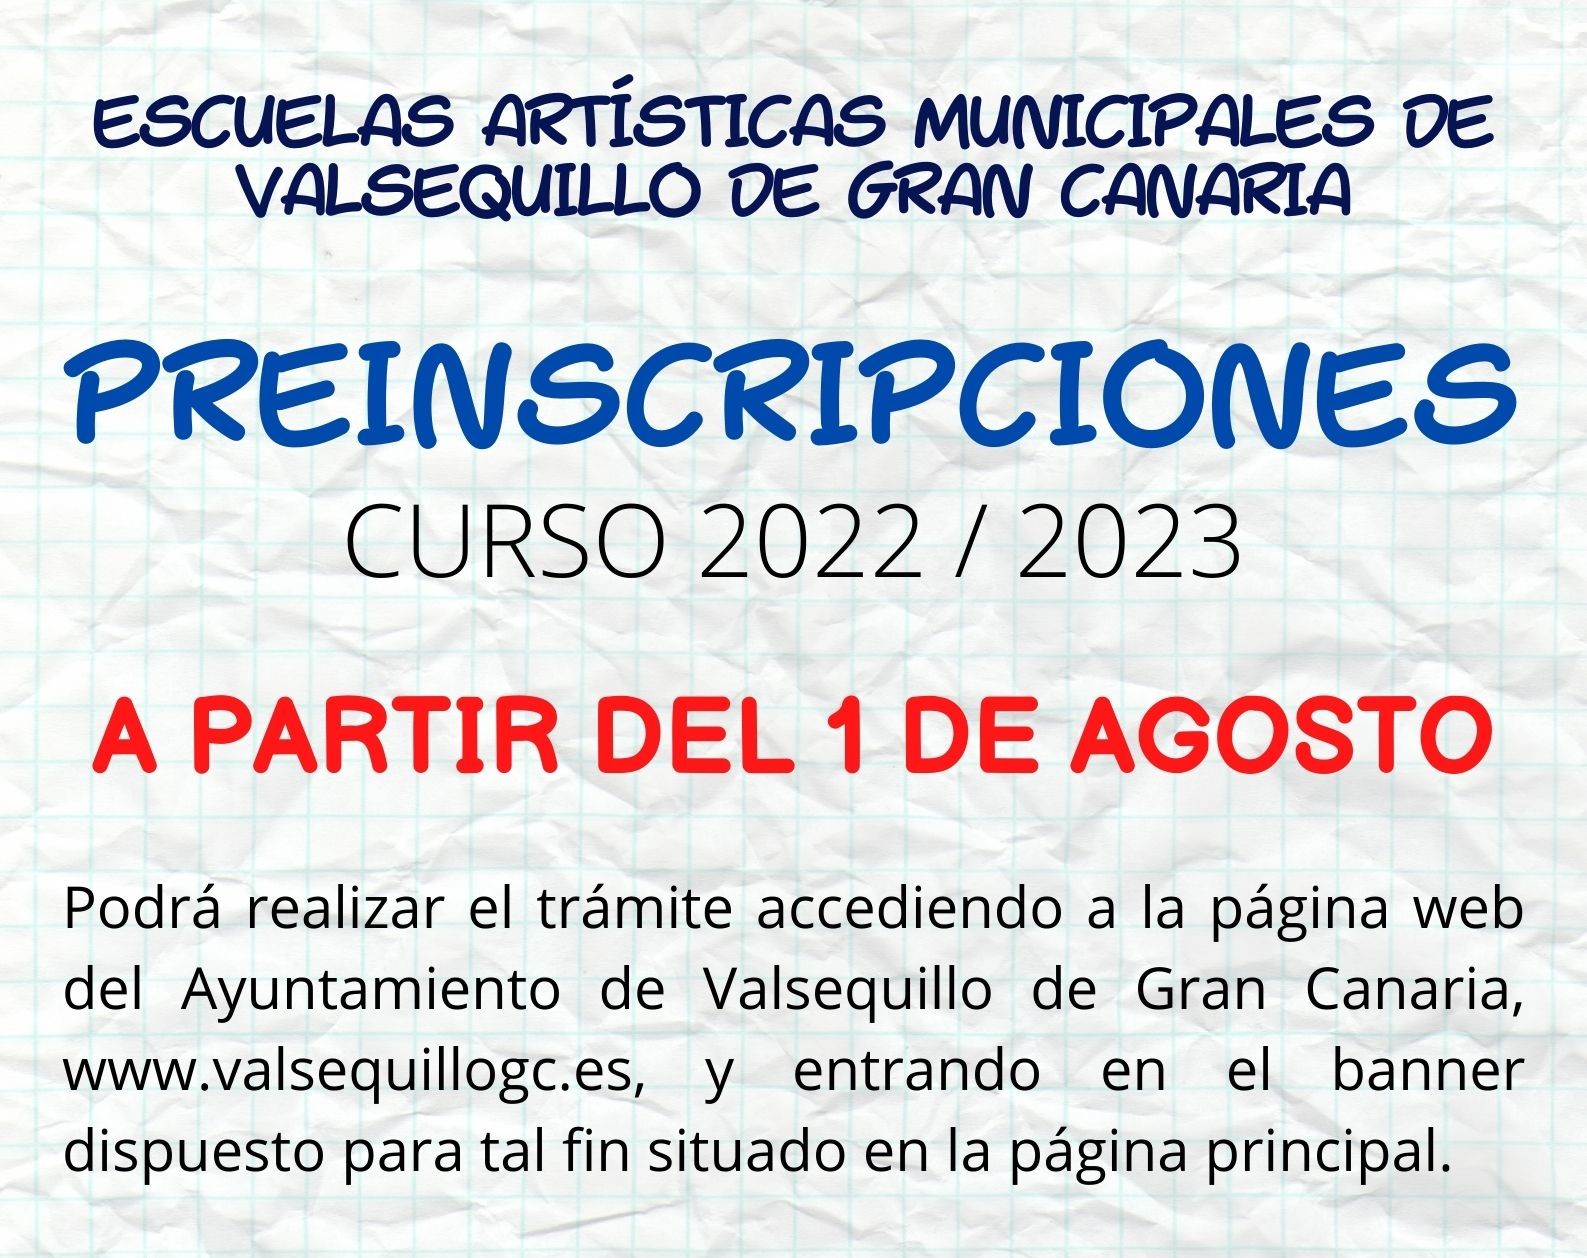 Escuelas artísticas municipales de Valsequillo